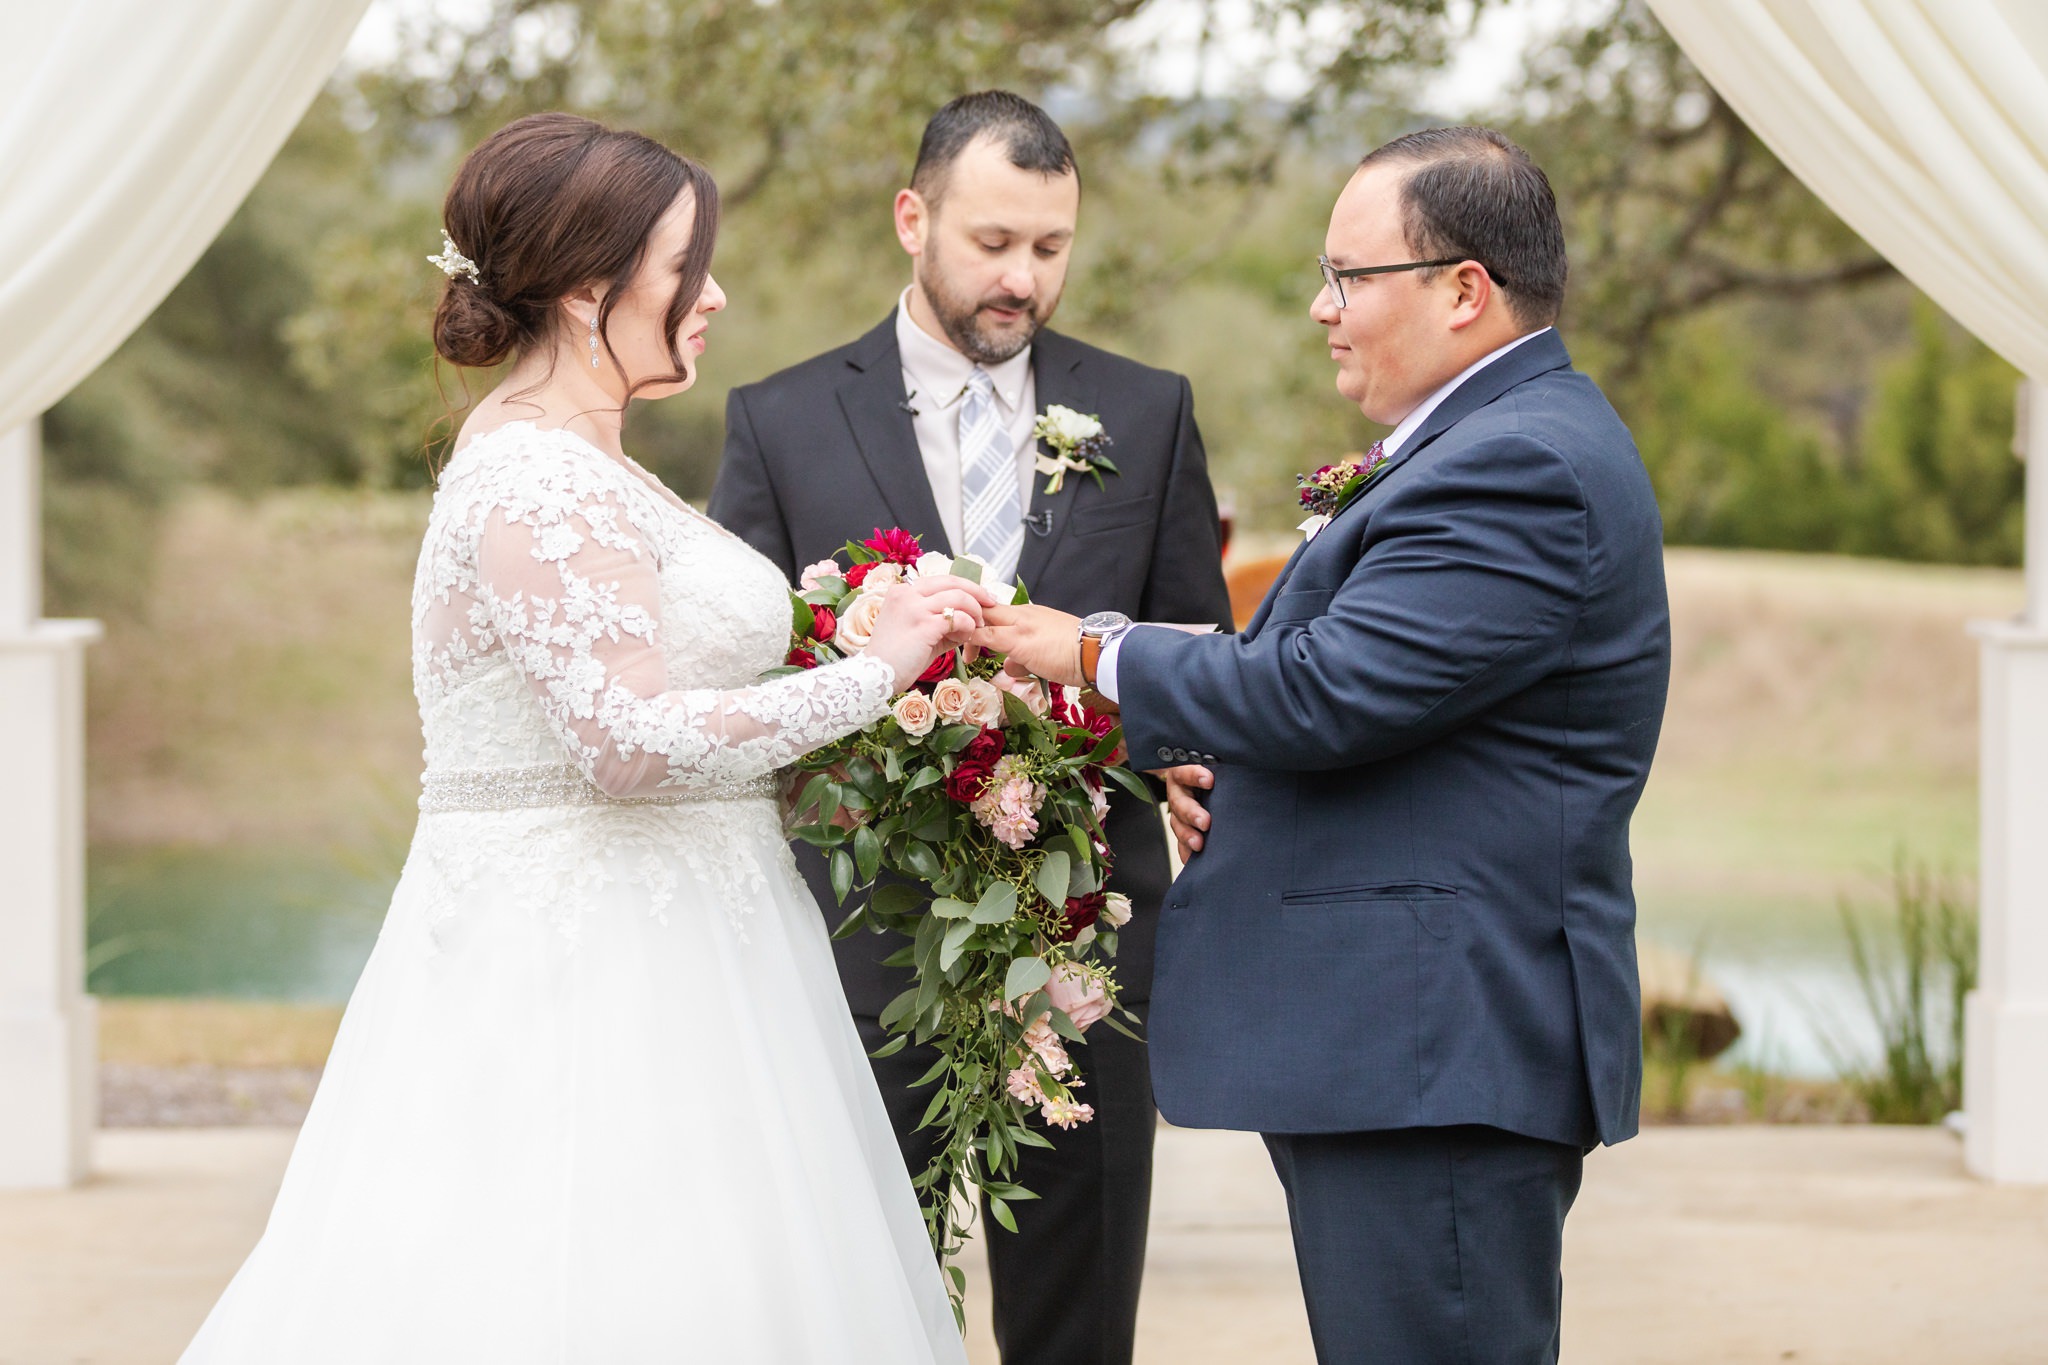 A Dusty Blue and Burgundy Wedding at Kendall Plantation in Boerne, TX by Dawn Elizabeth Studios, Boerne Wedding Photographer